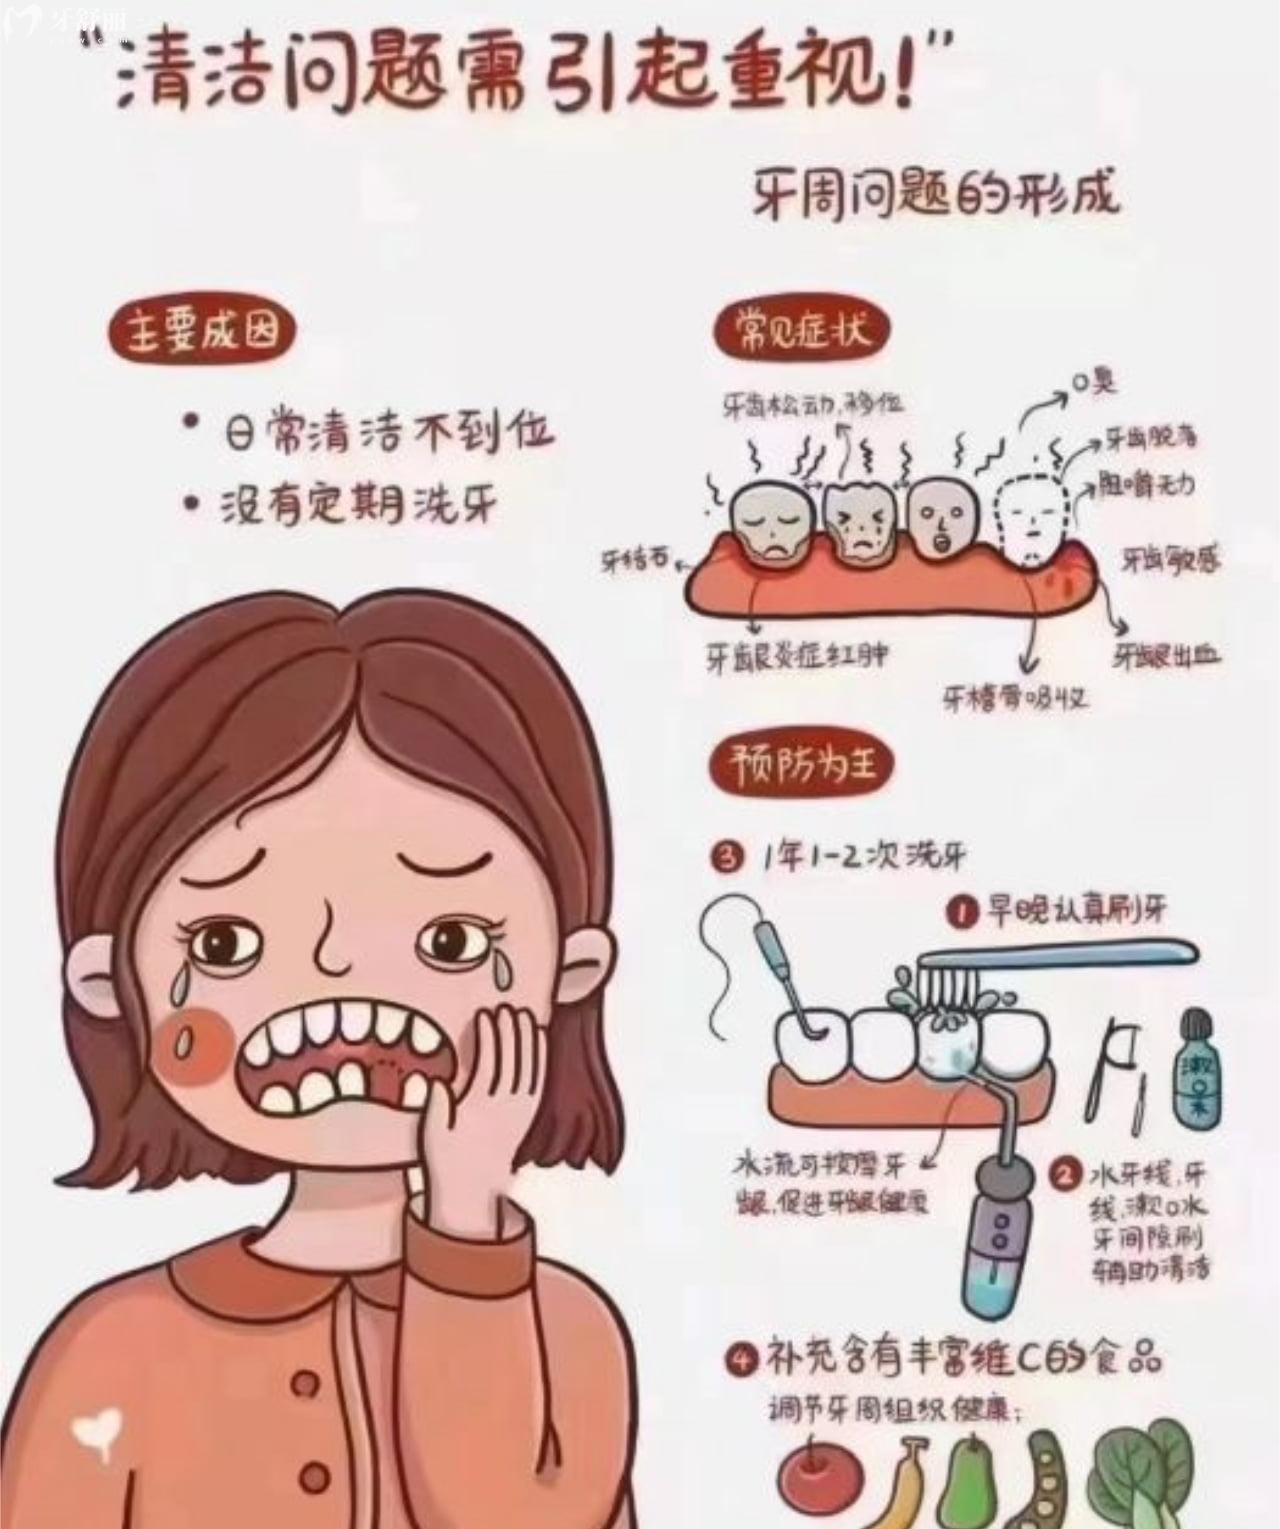 不认真清洁牙齿会带来牙周疾病